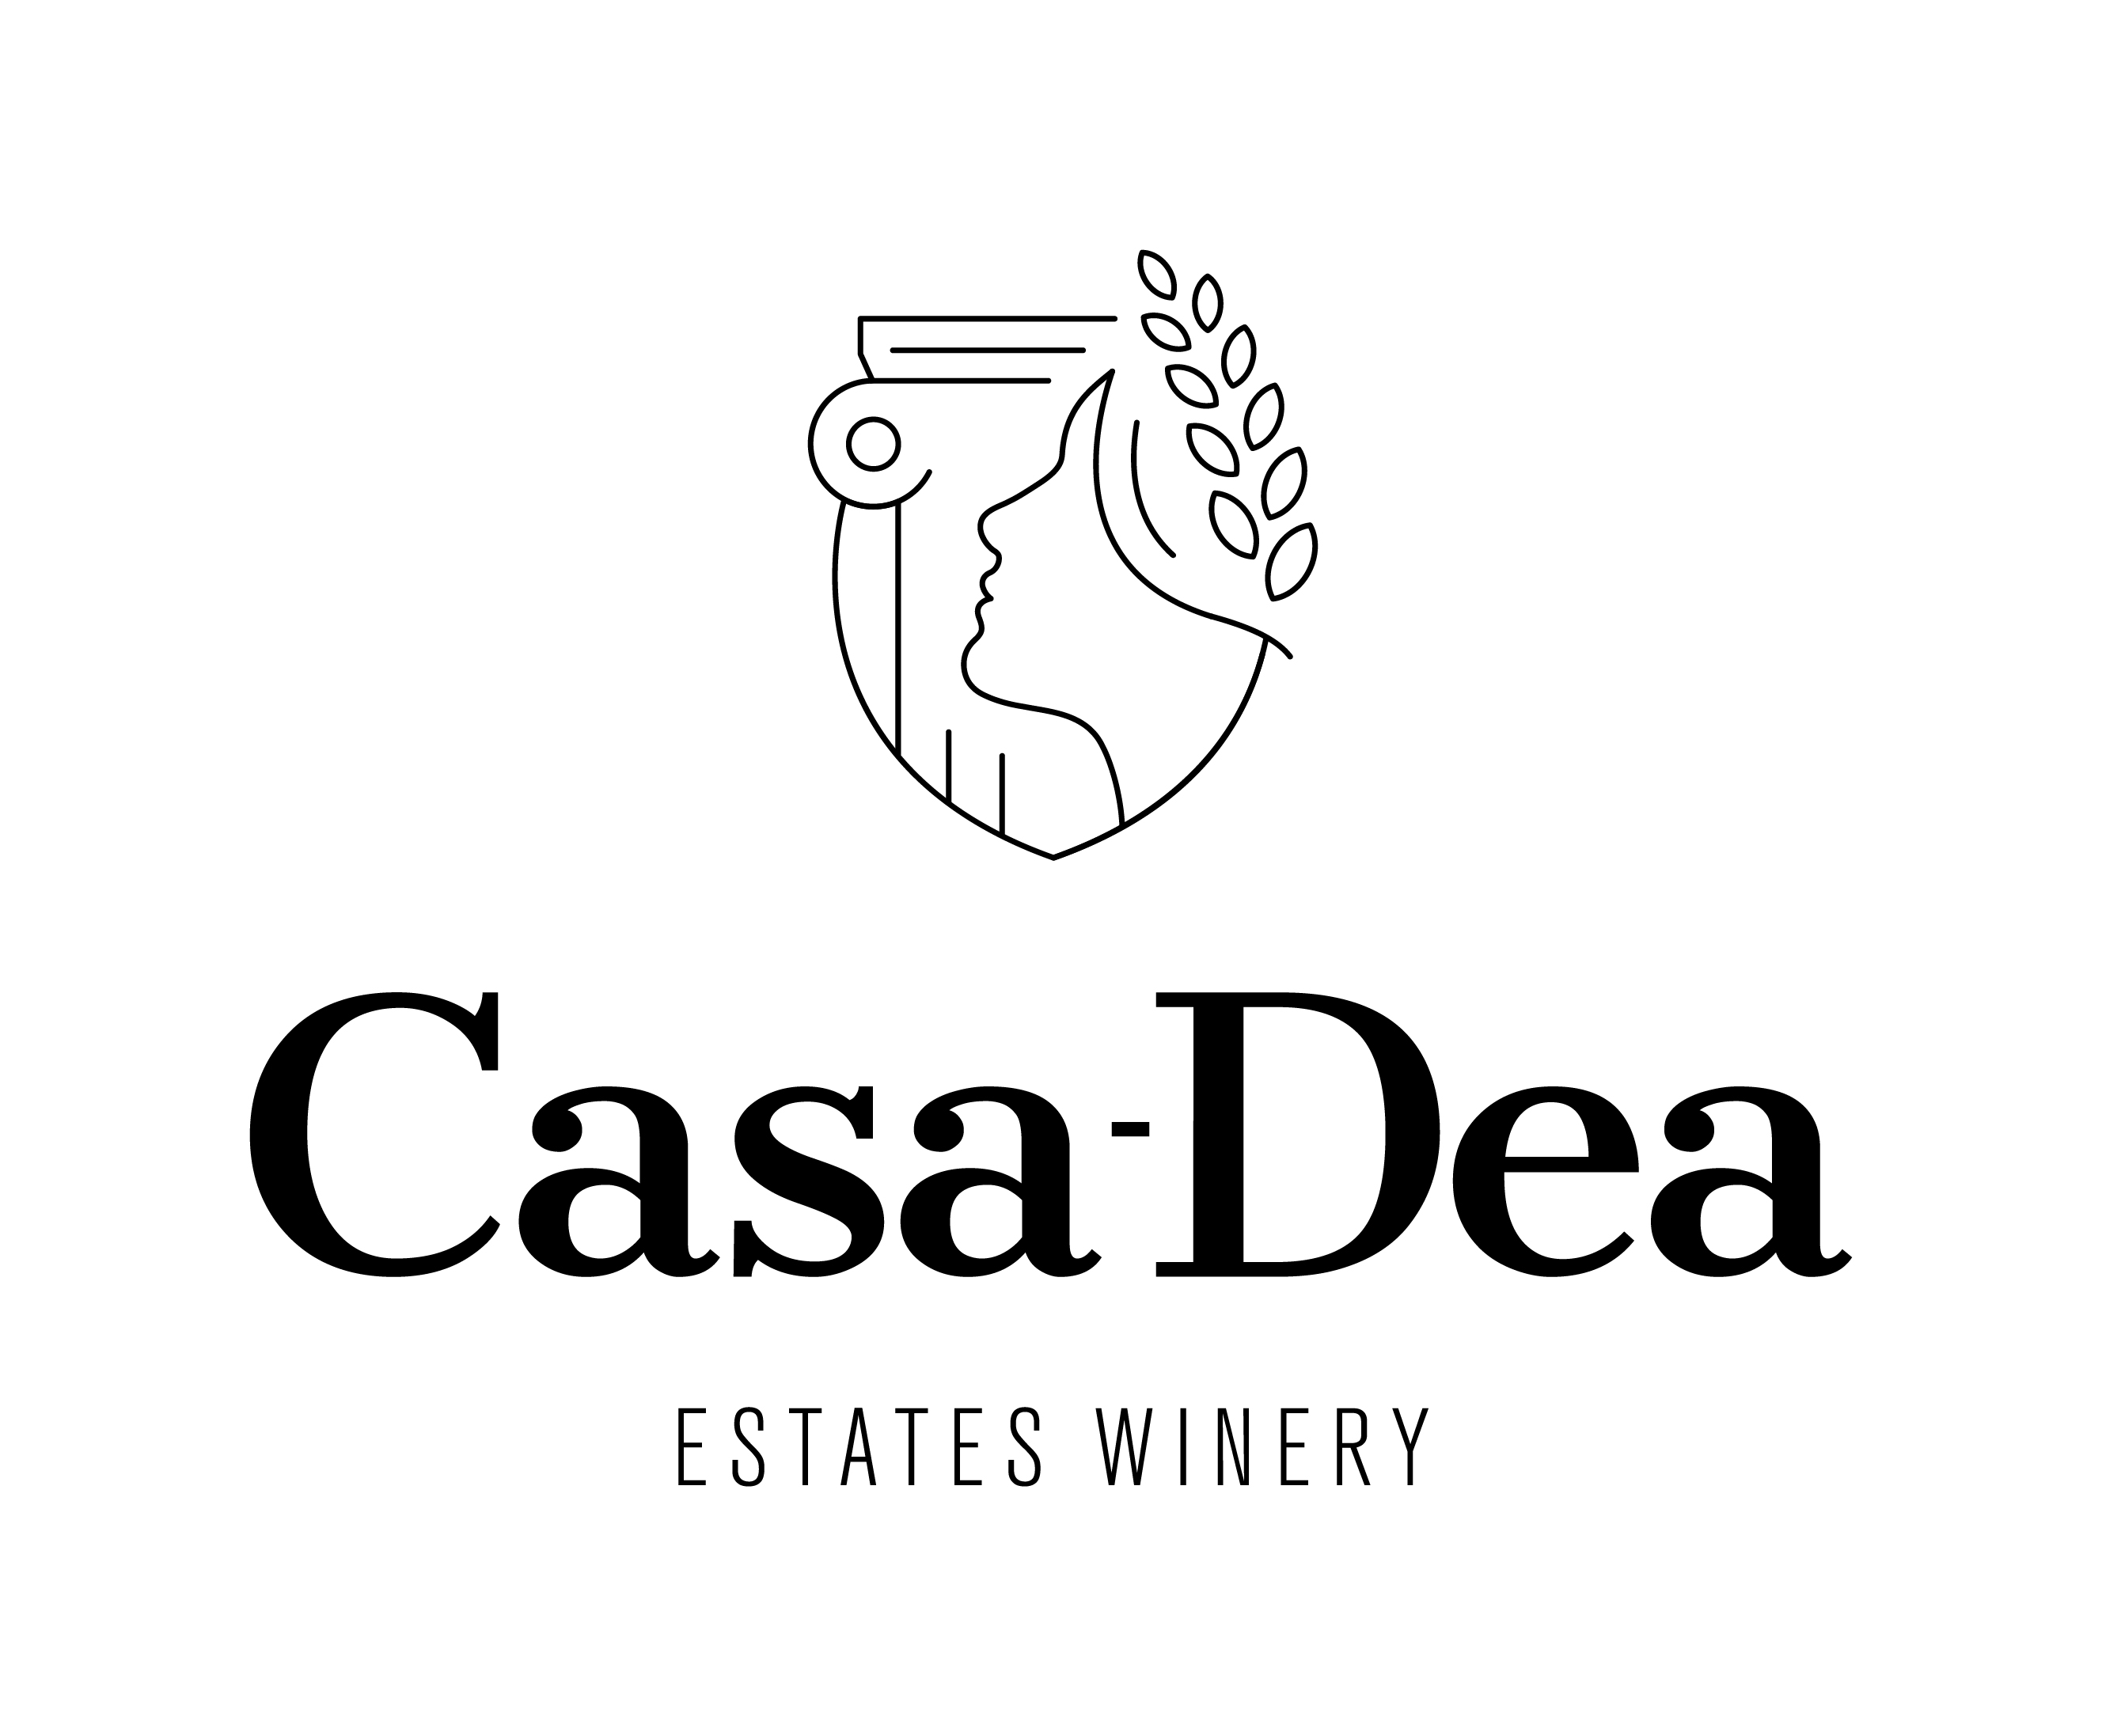 Casa-Dea Estates Winery